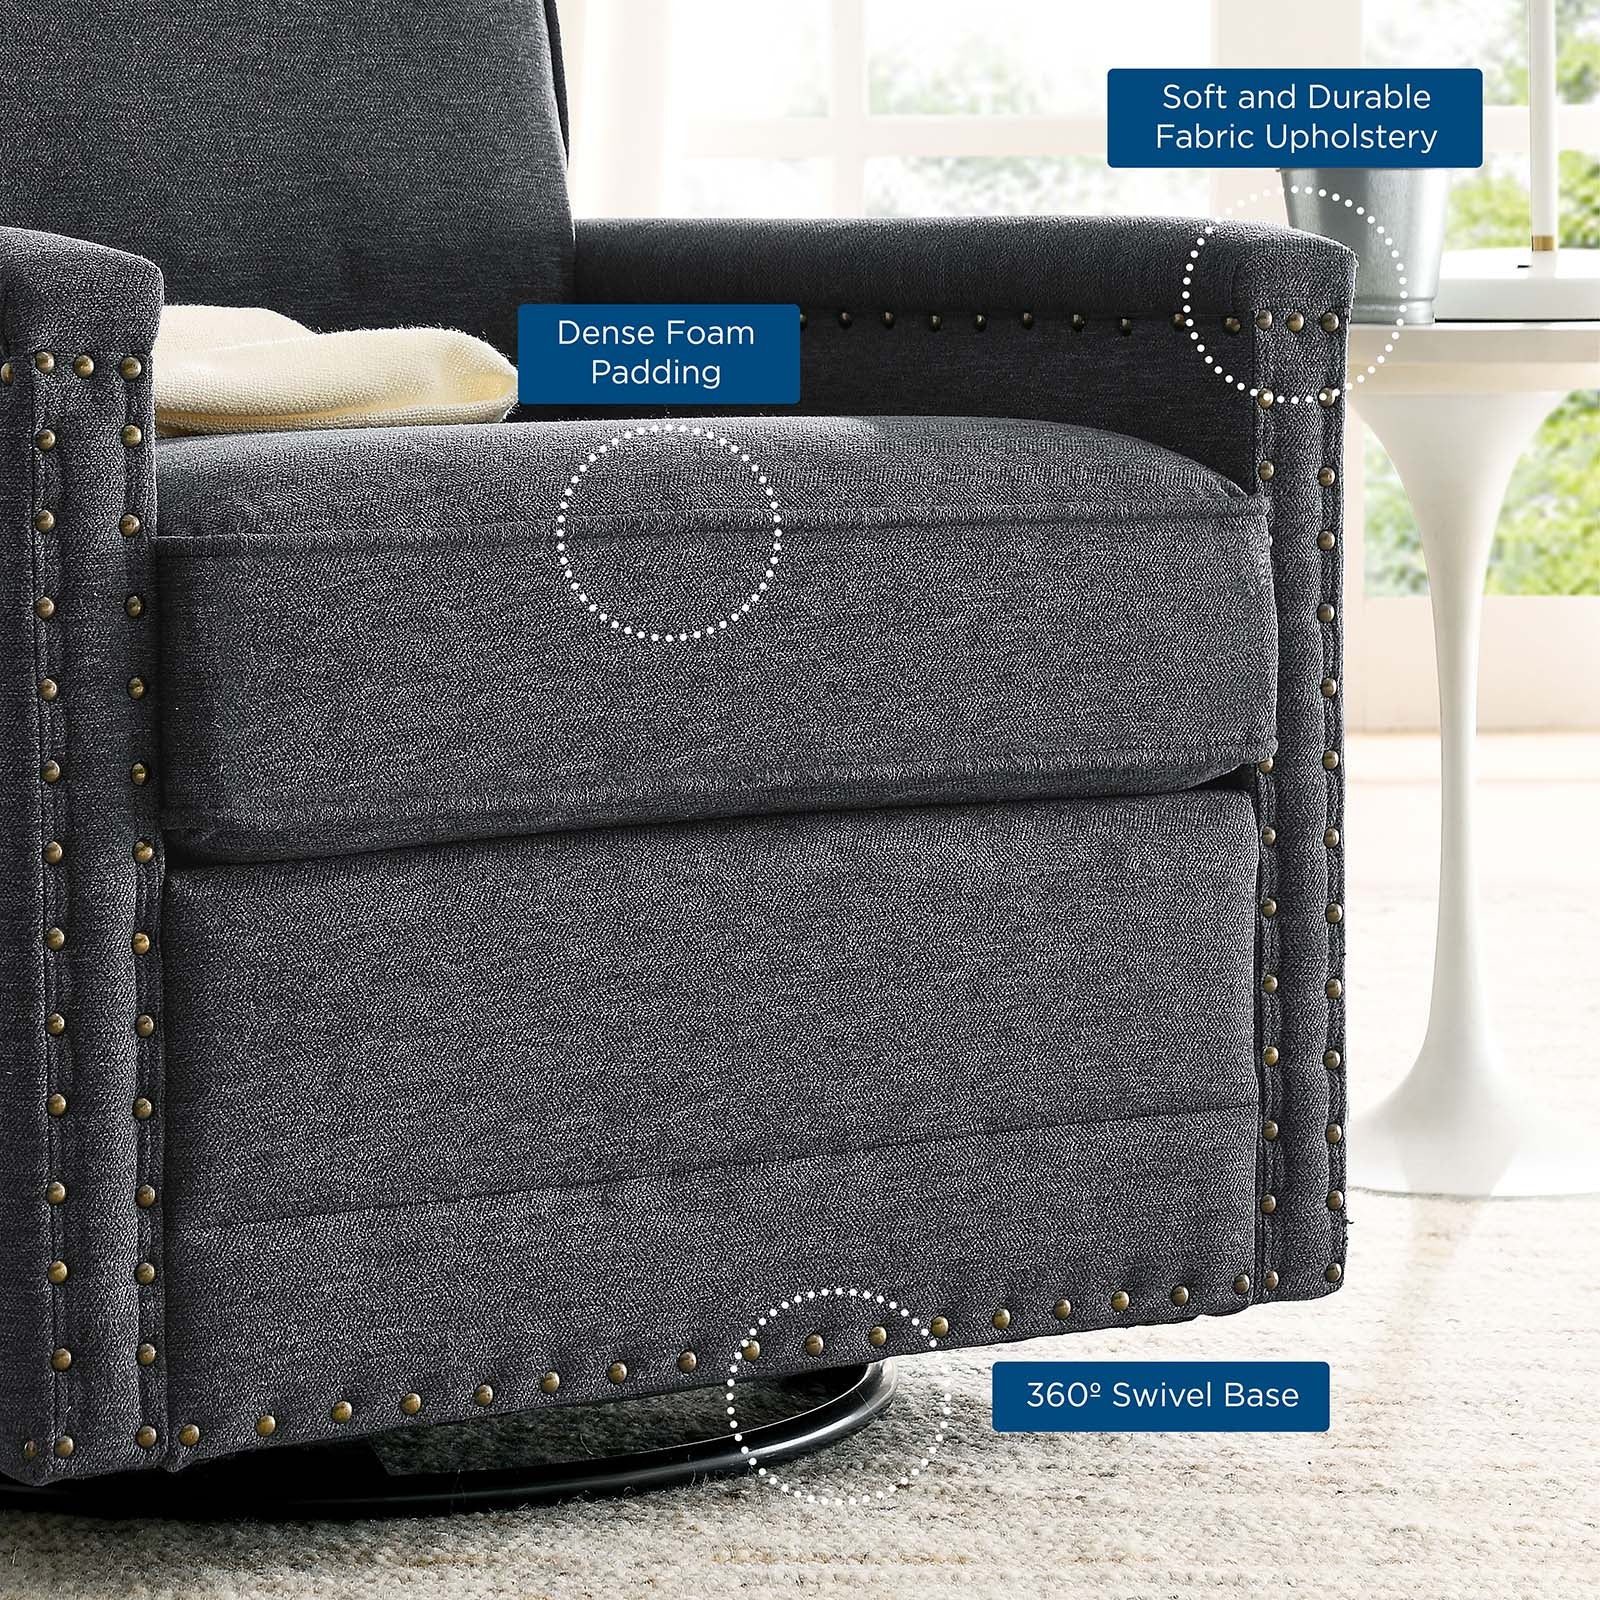 Ashton Upholstered Fabric Swivel Chair